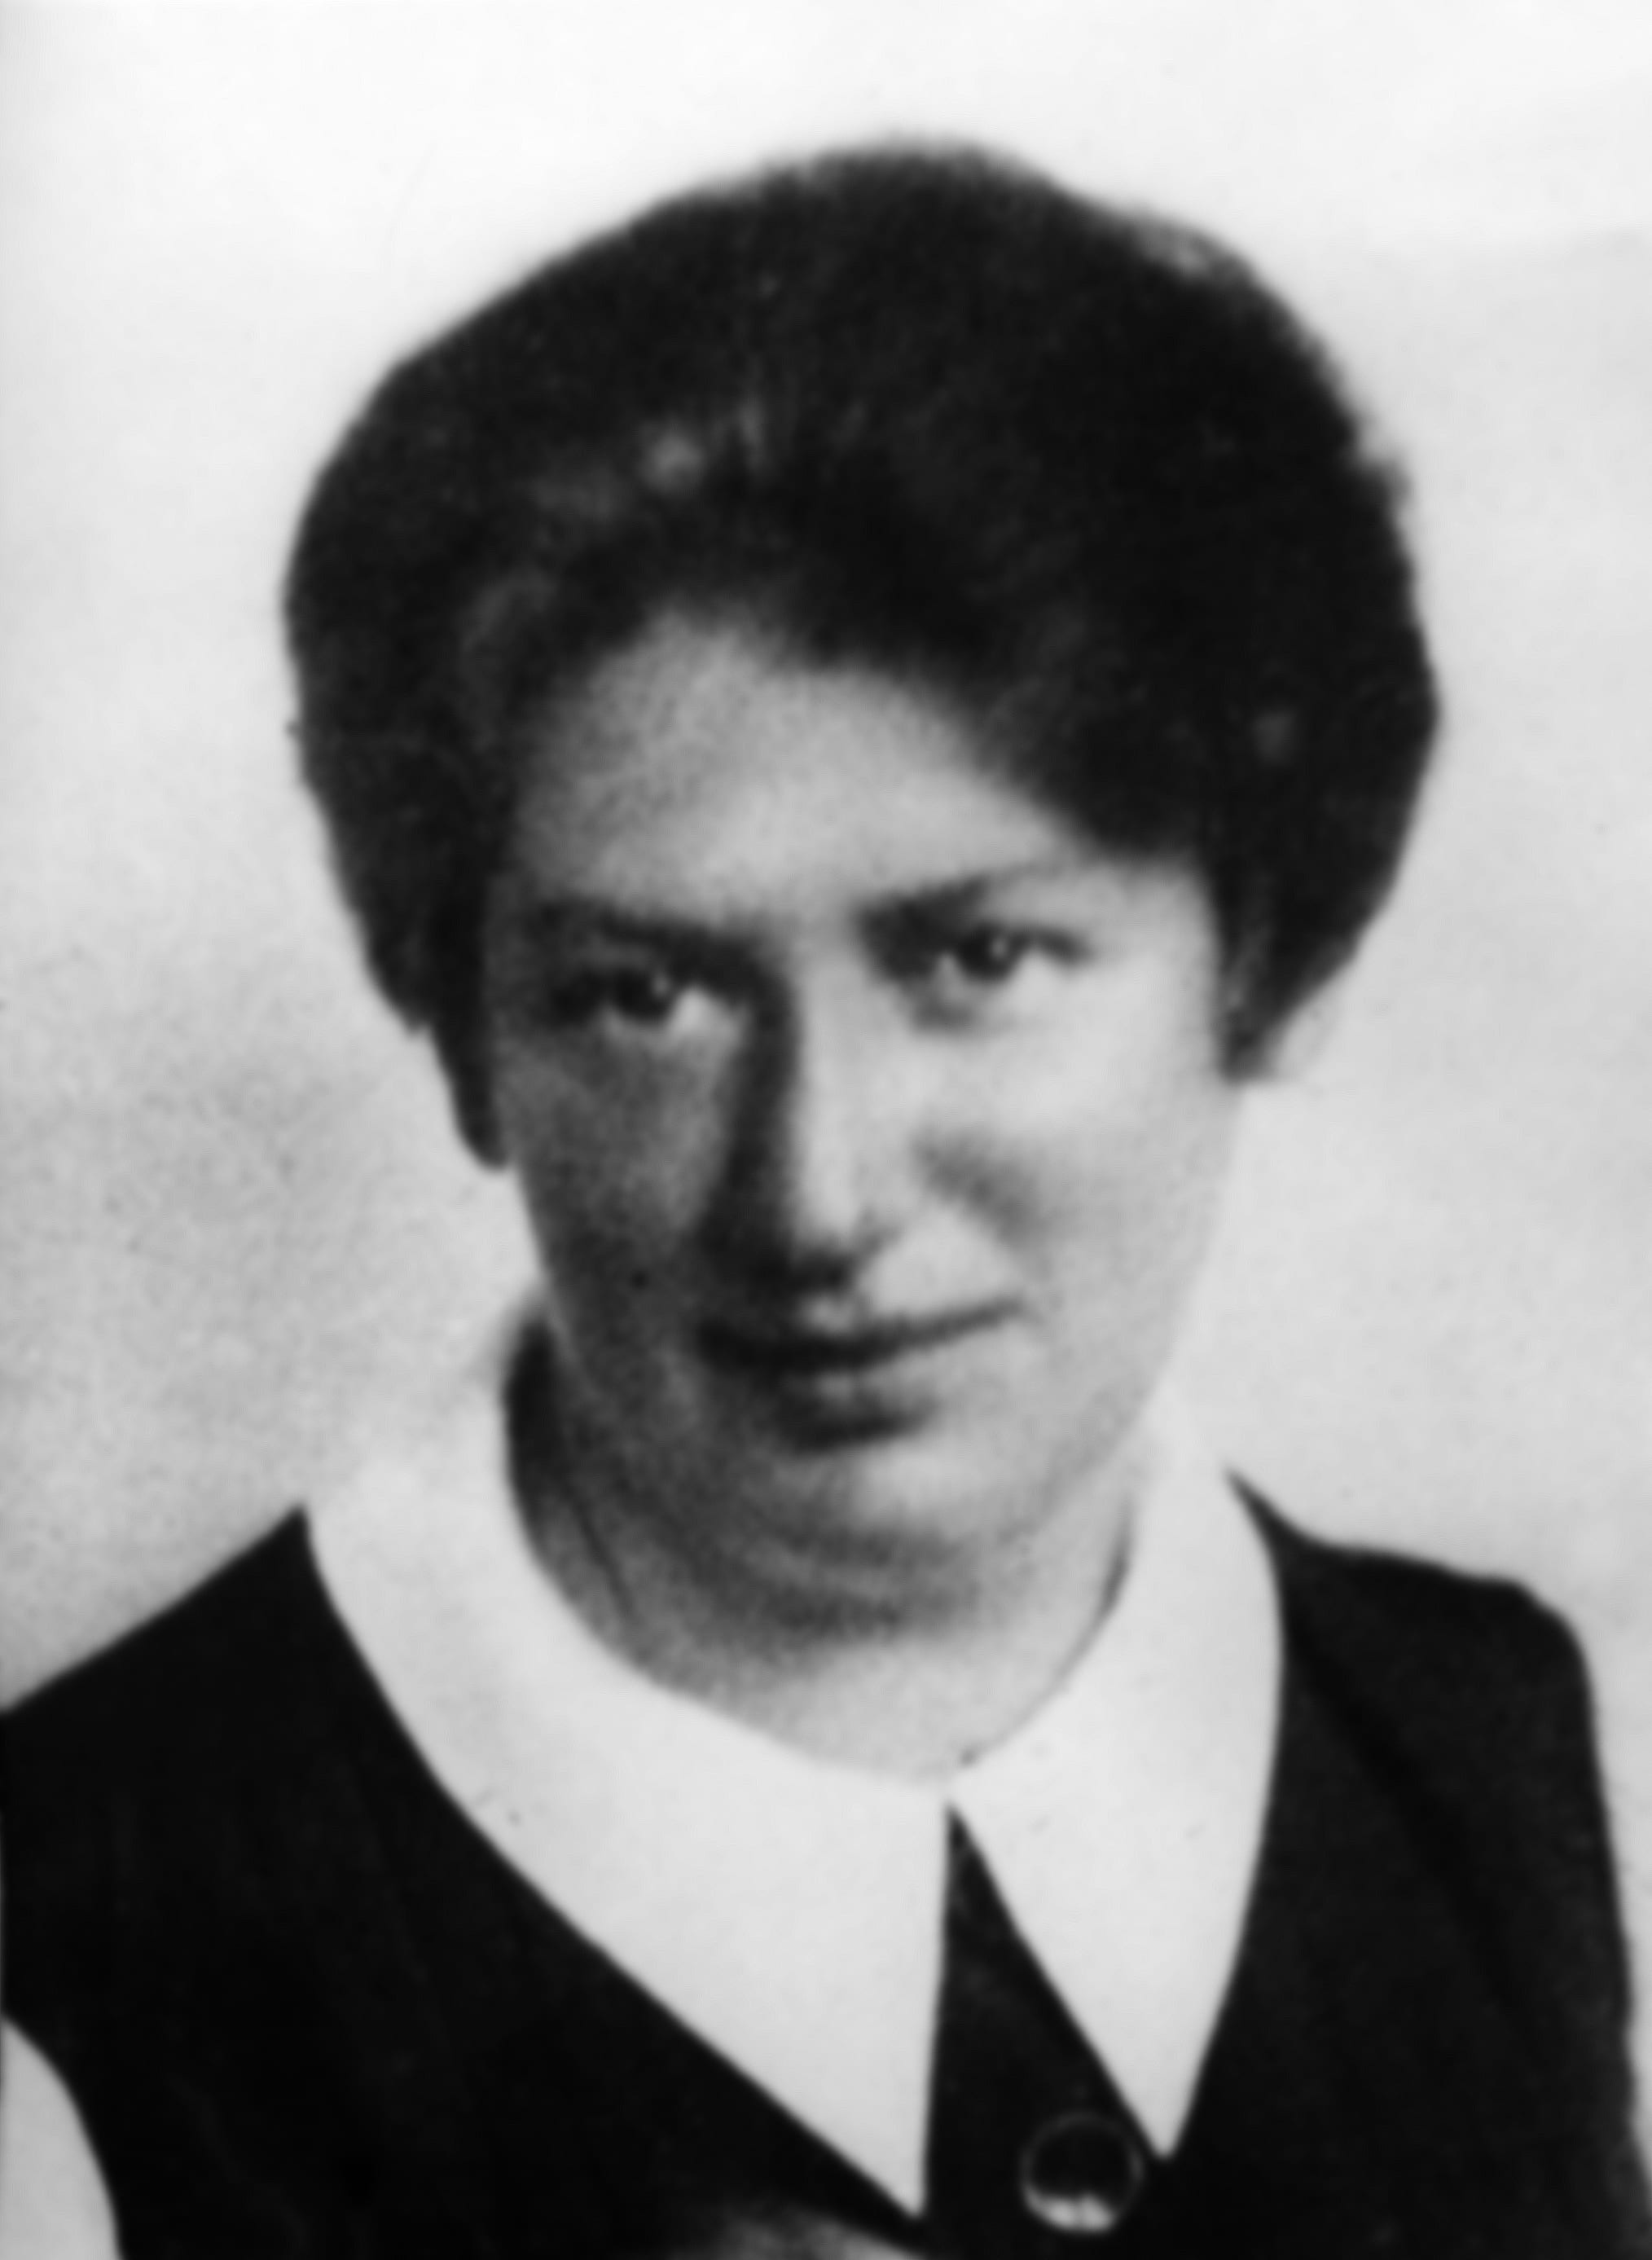 Portrait ehemalige Präsidentin der Arbeiterkammer Käthe Leichter. Sie setzte sich für den Indexlohn ein. 